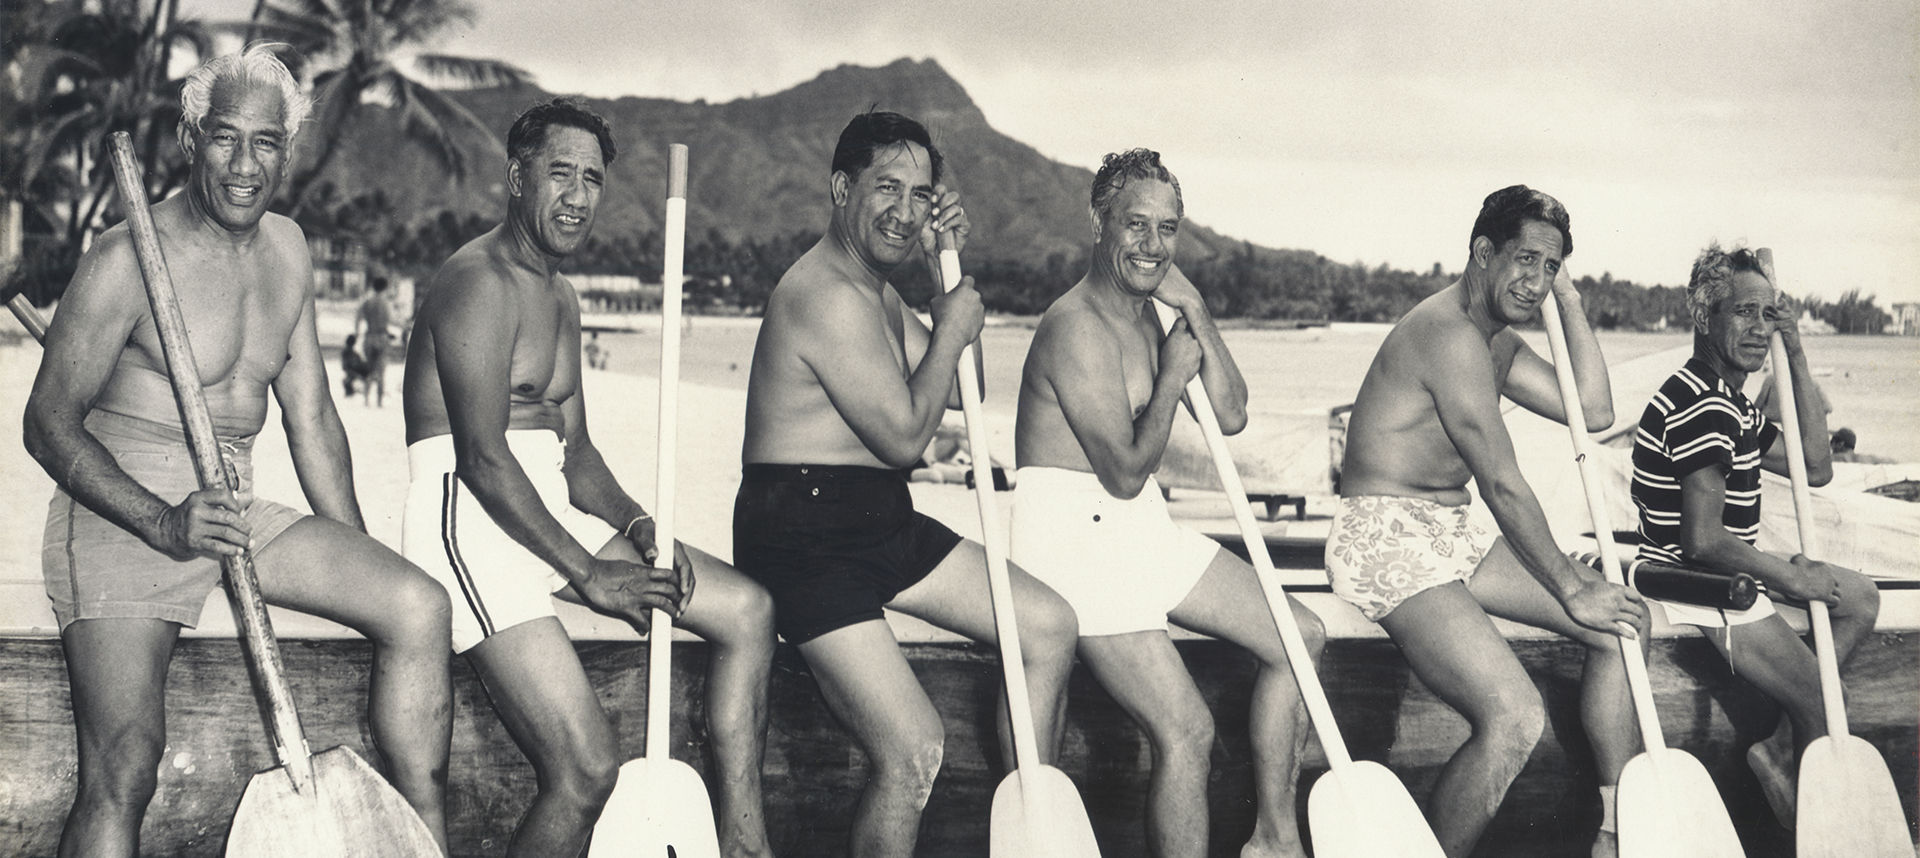 Duke Kahanamoku and the Beach Boys